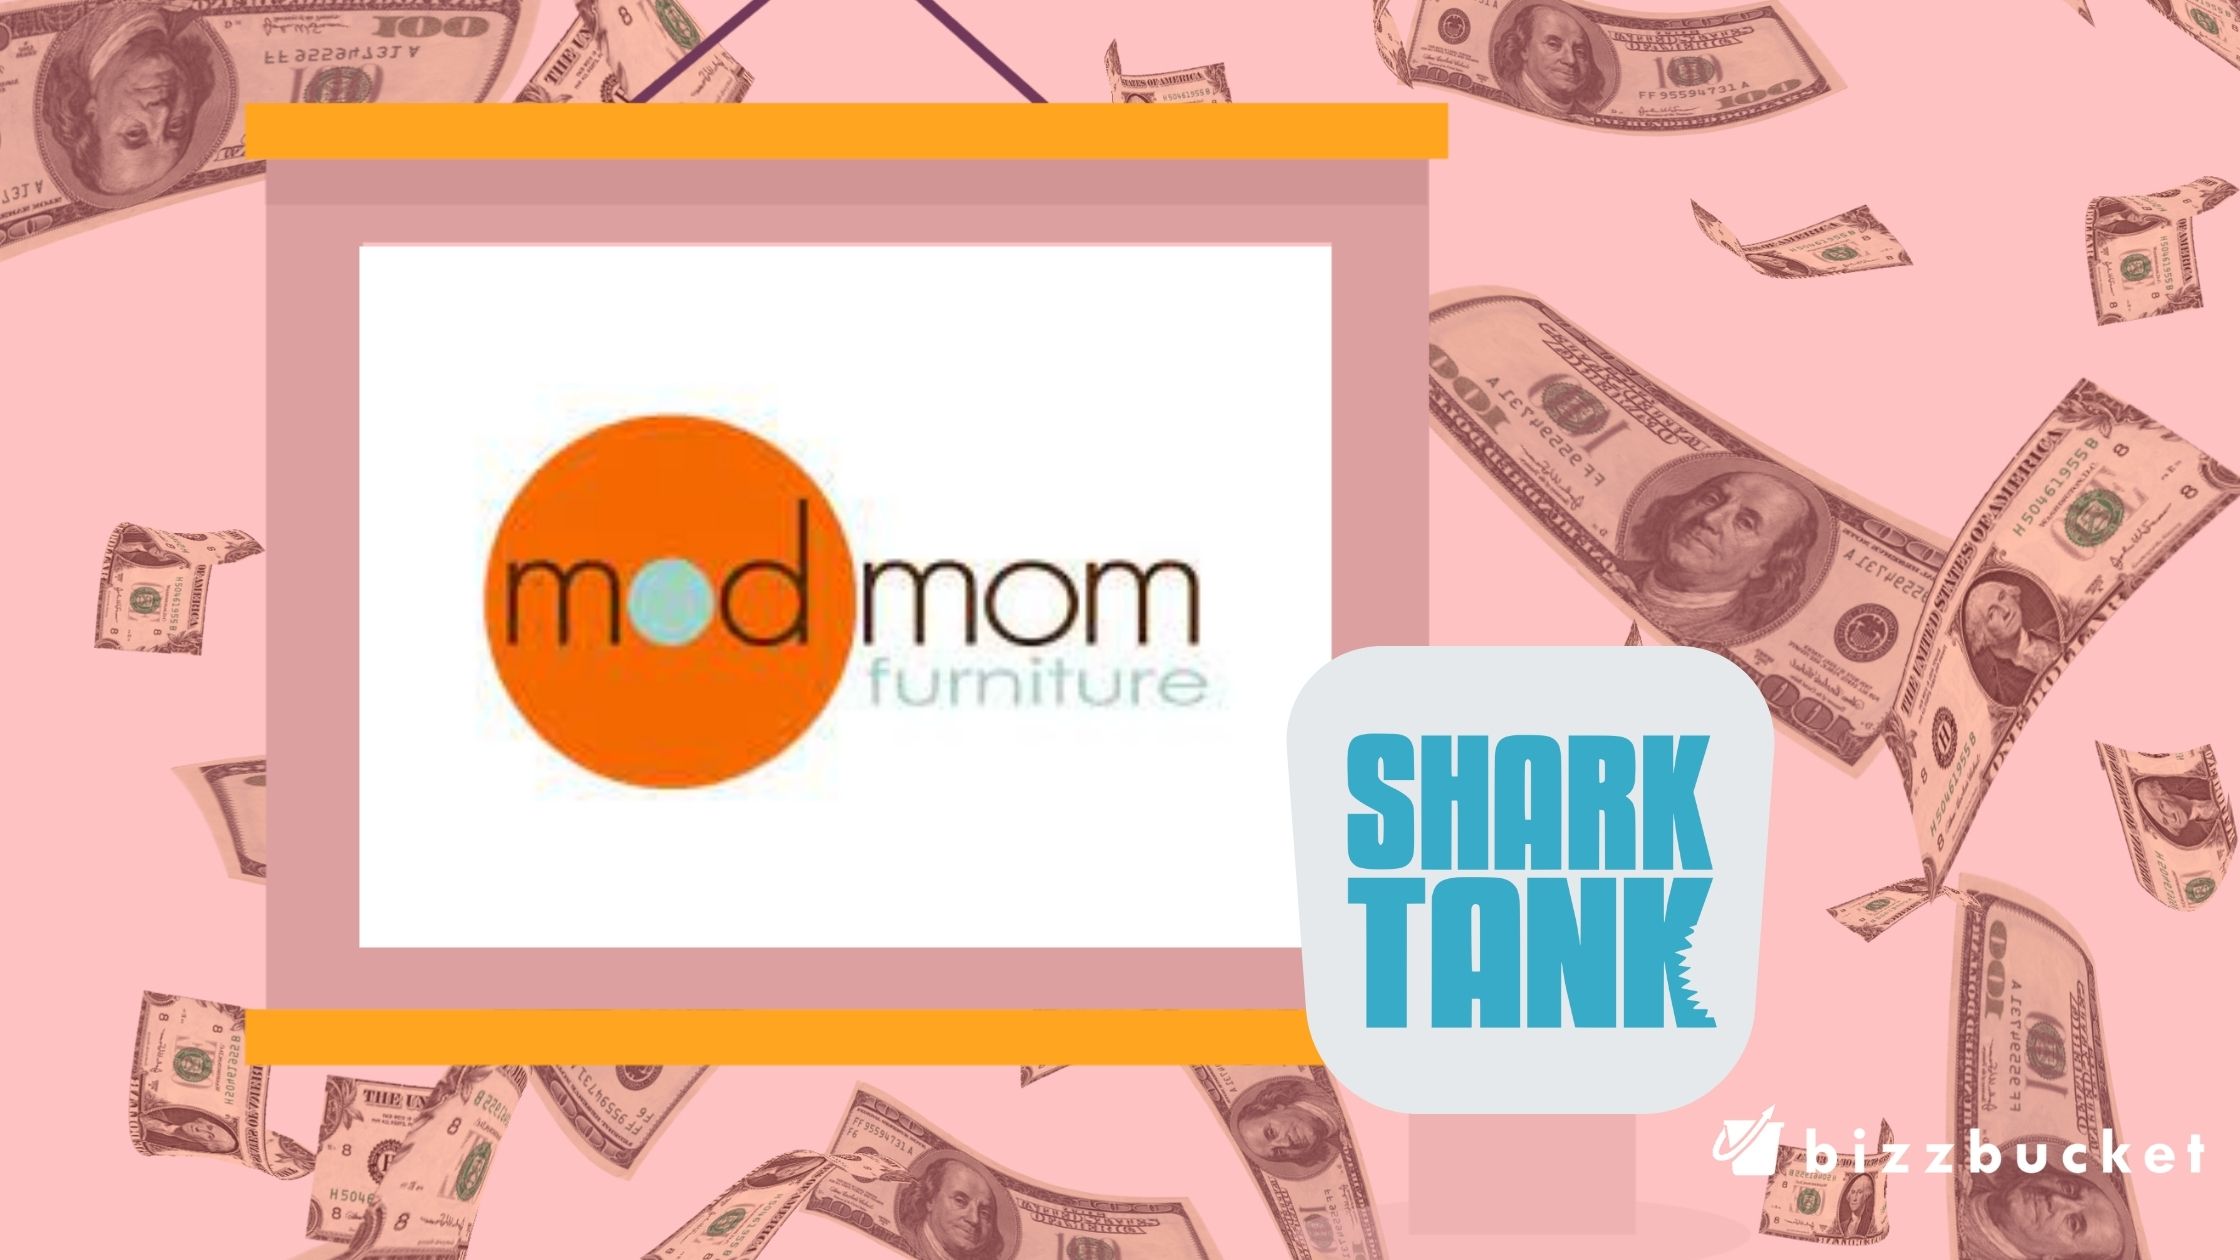 Mod Mom shark tank update